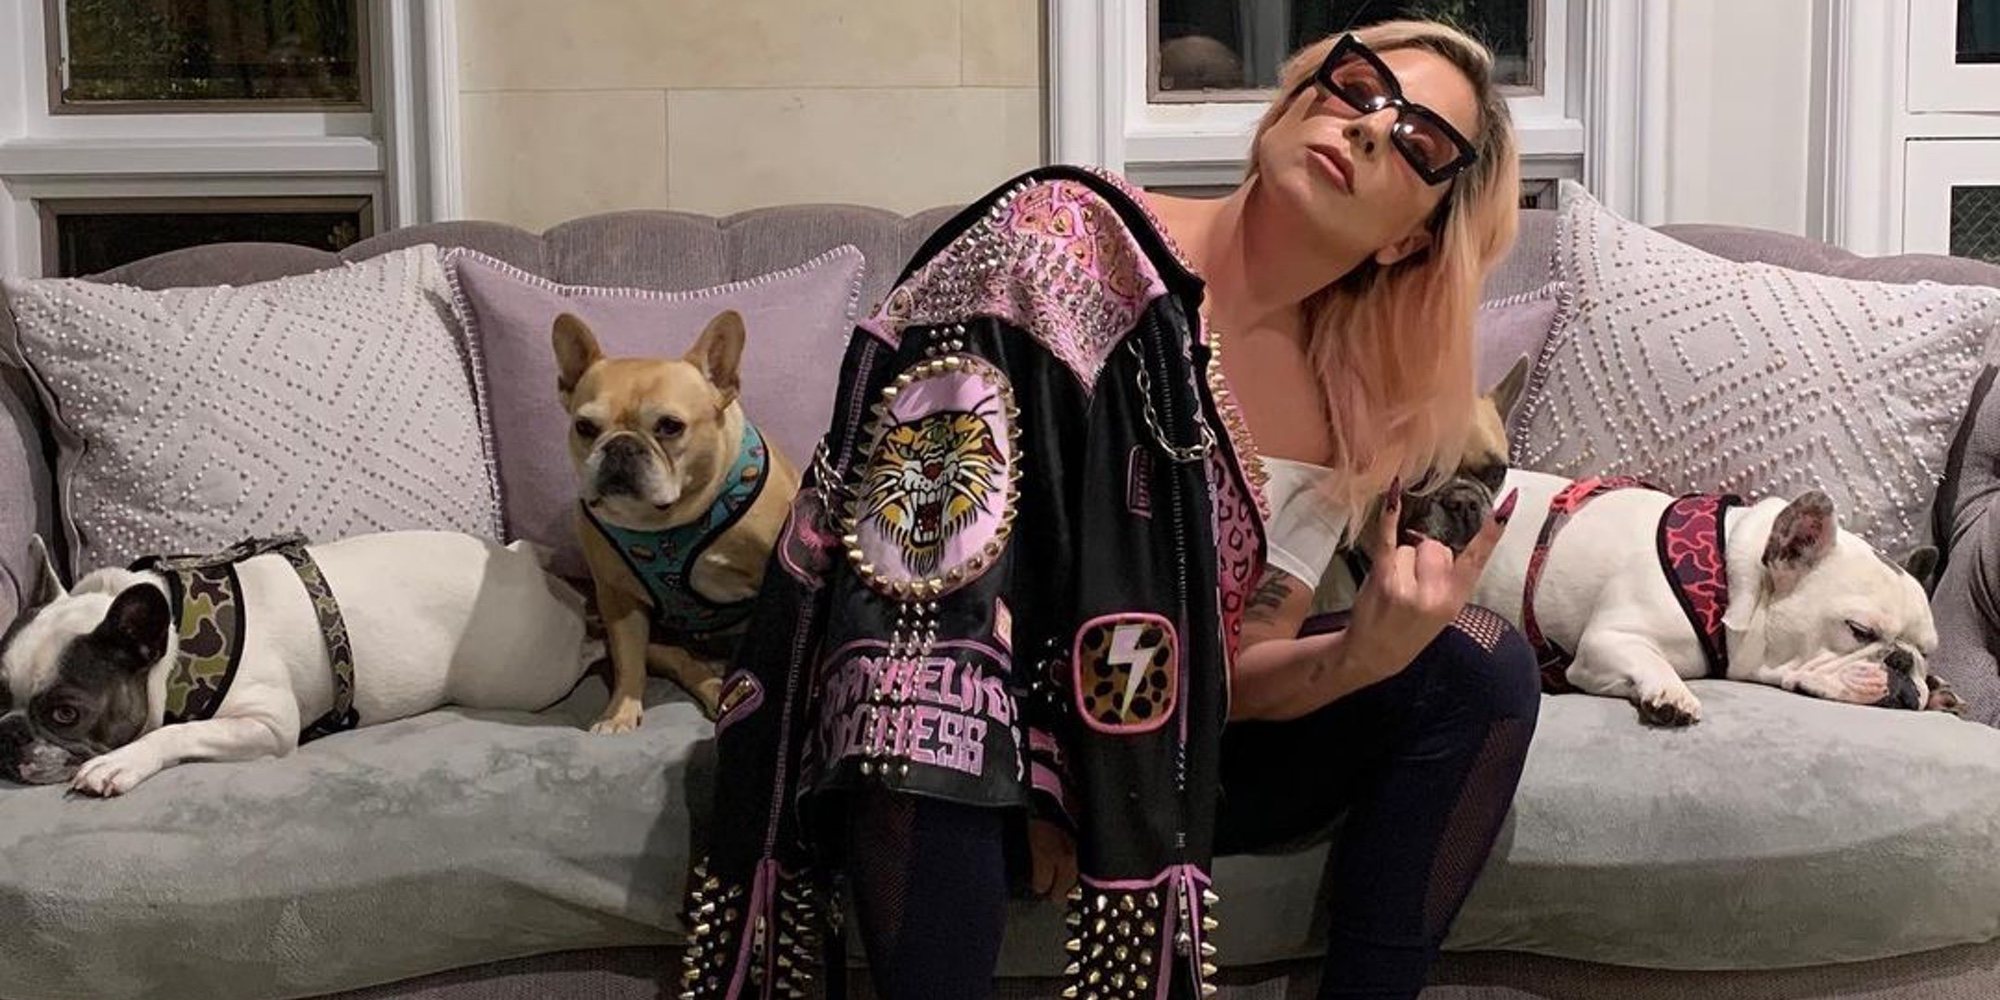 Aparecen sanos y salvos los perros robados de Lady Gaga